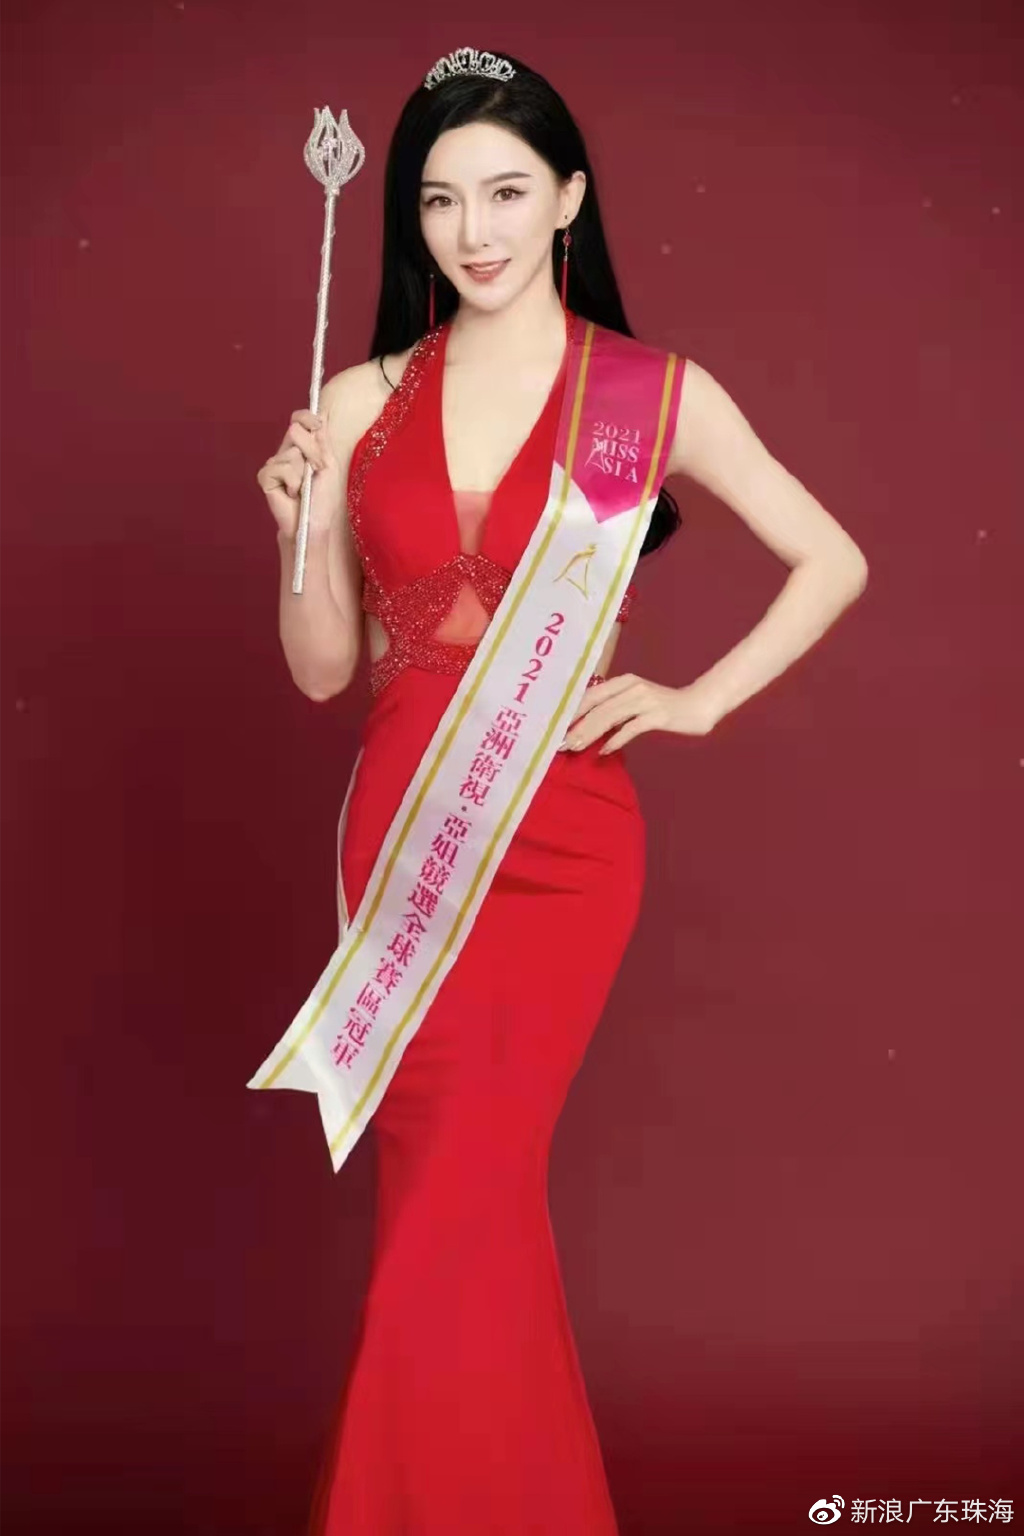 2020年第32届亚洲小姐大中华总决赛顺利举行 冠军李初宣接受百家媒体采访 - 国际时报网